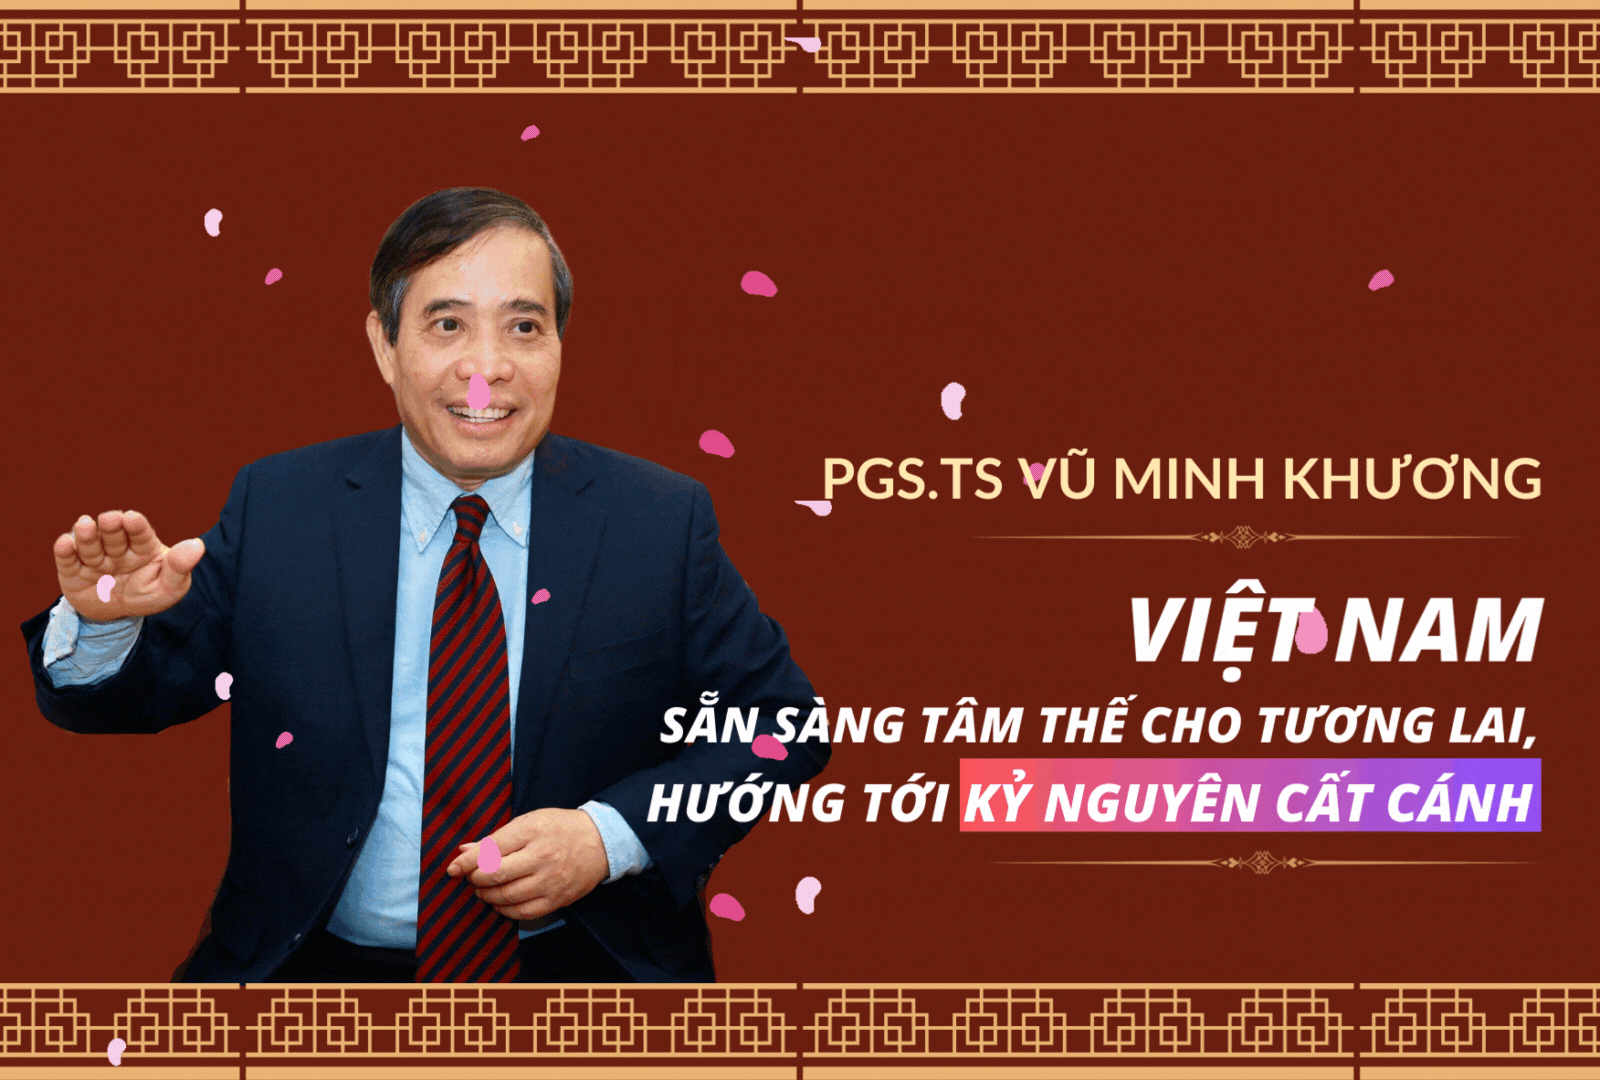 PGS.TS Vũ Minh Khương: Việt Nam sẵn sàng tâm thế cho tương lai, hướng tới kỷ nguyên cất cánh